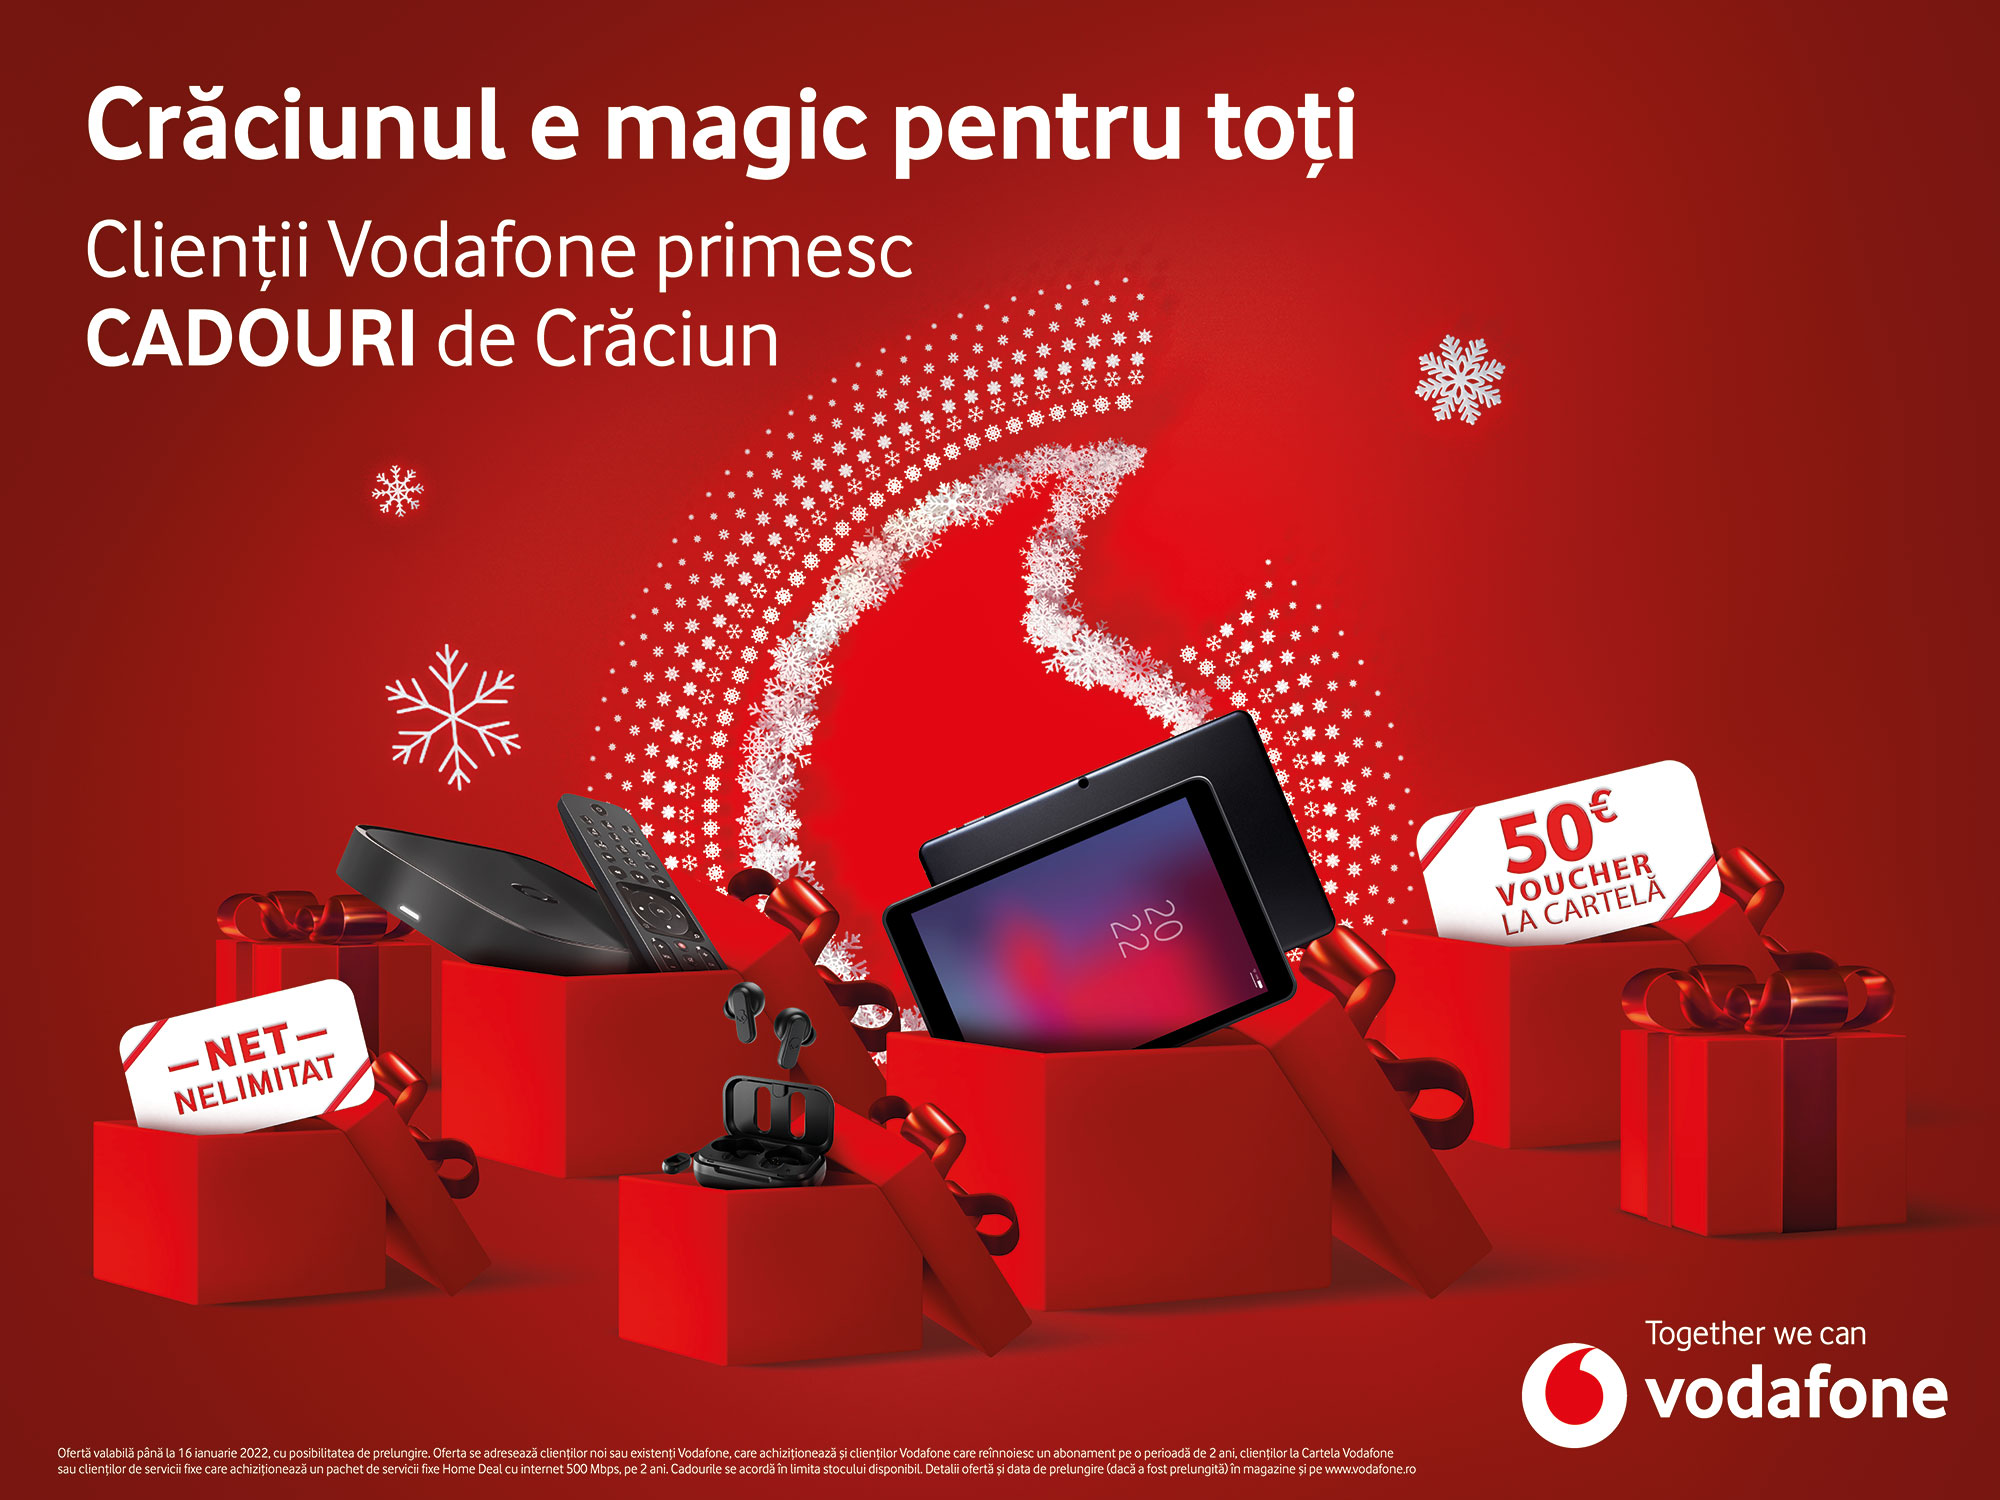 De Crăciun, clienții Vodafone primesc cadouri